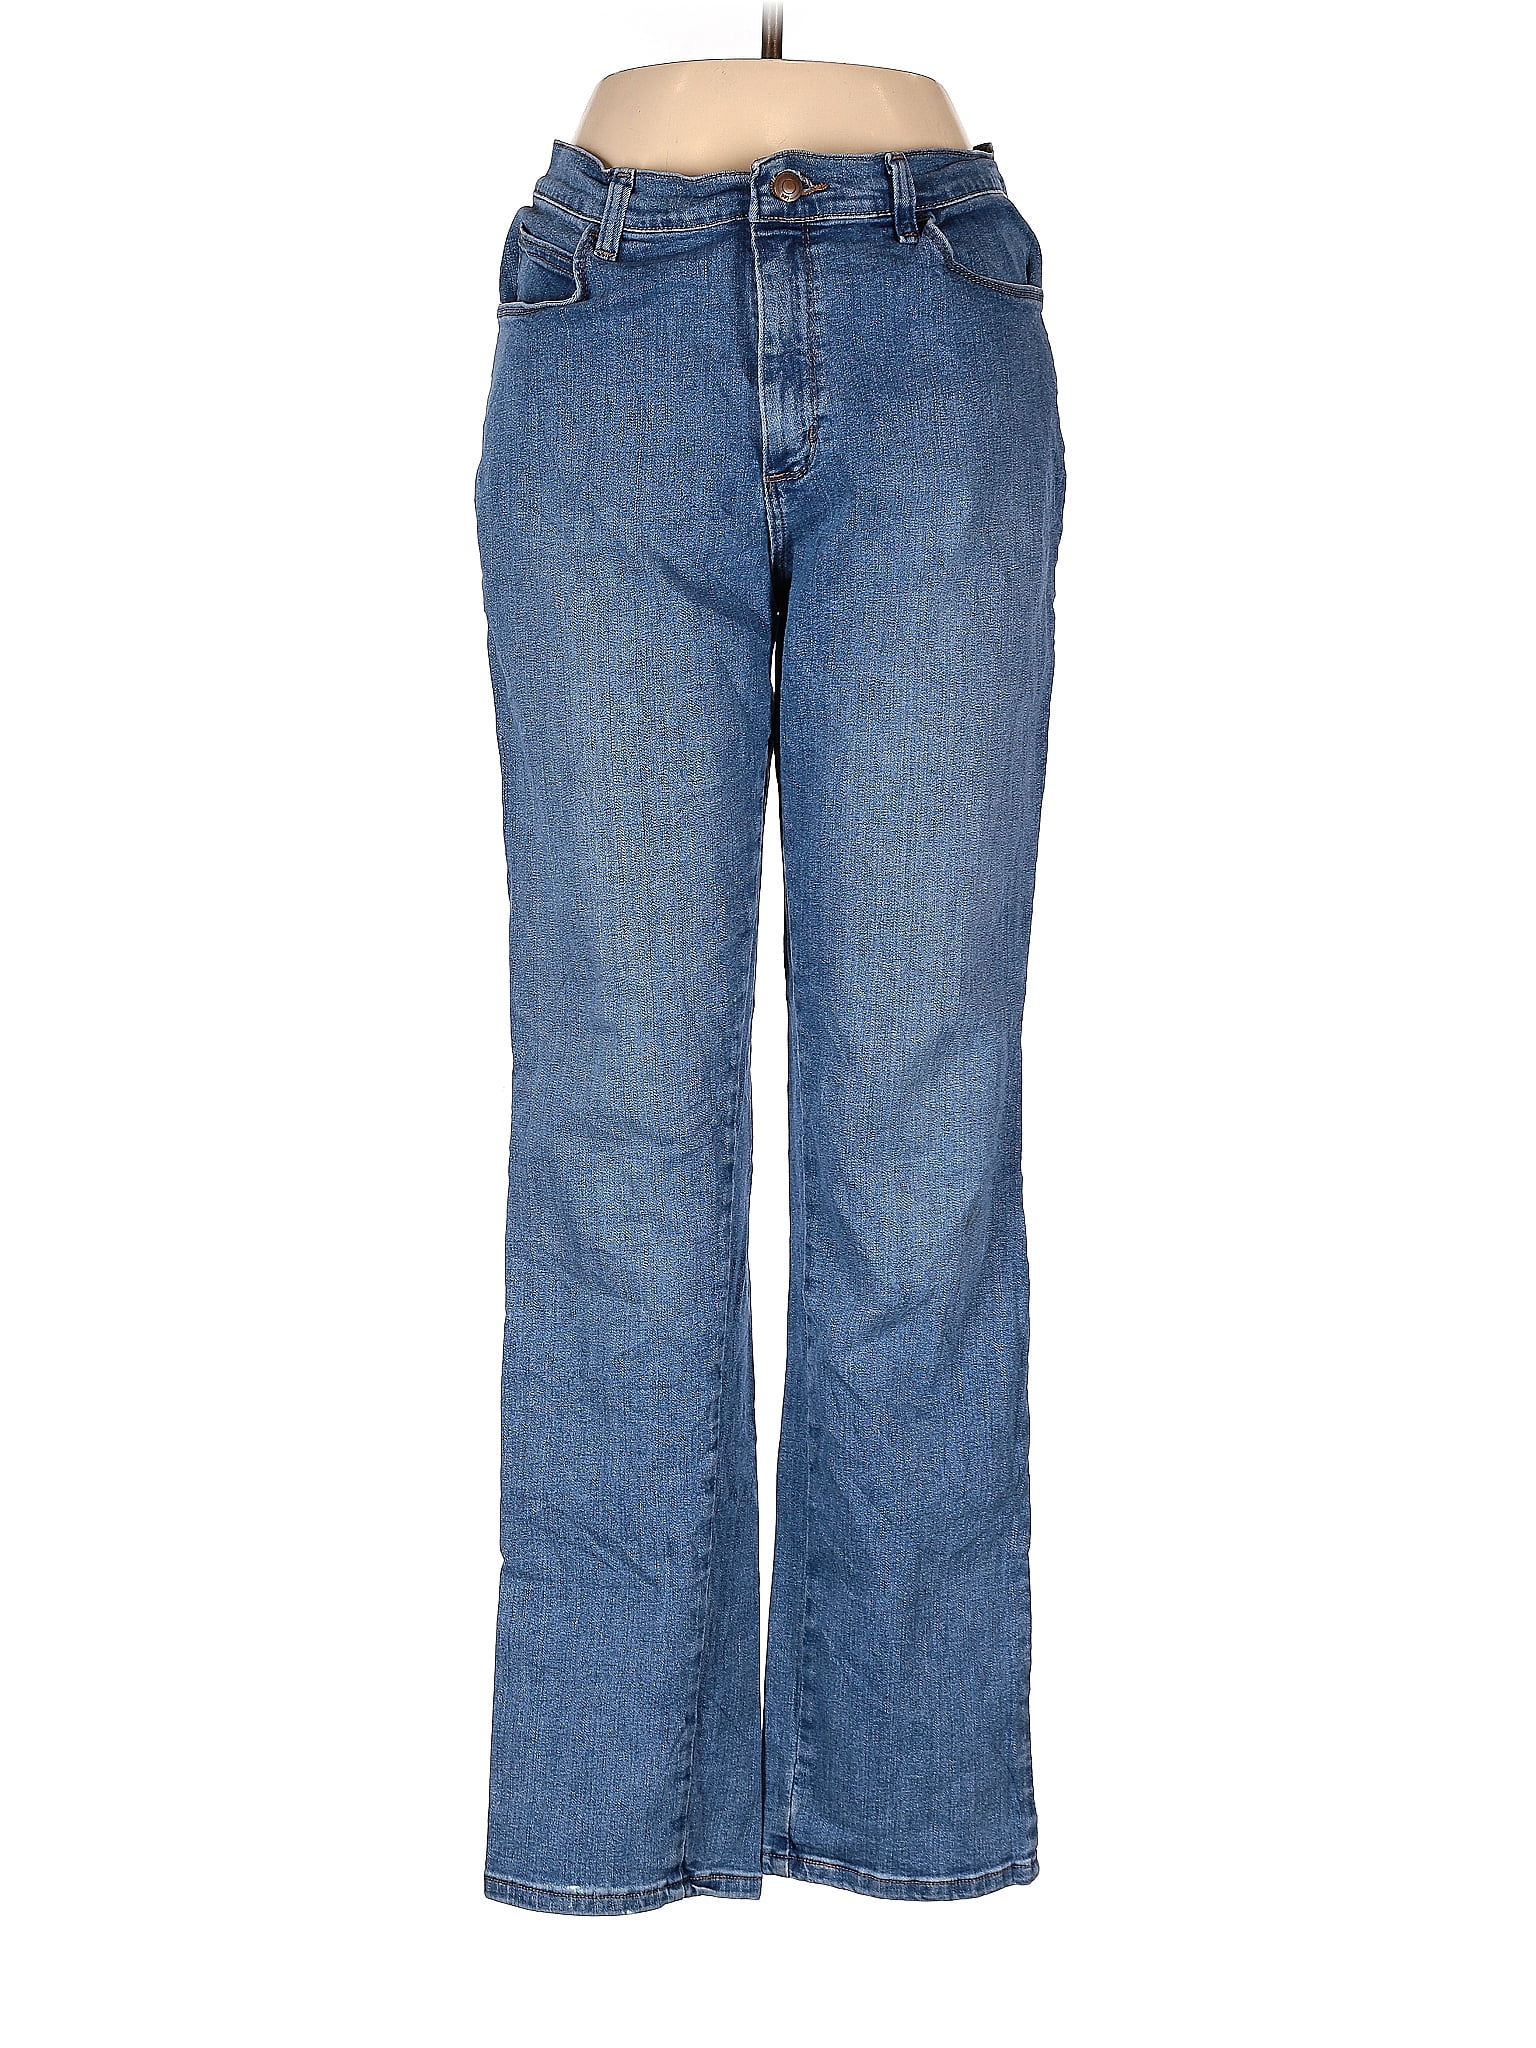 Lee Solid Blue Jeans Size 8 - 61% off | thredUP